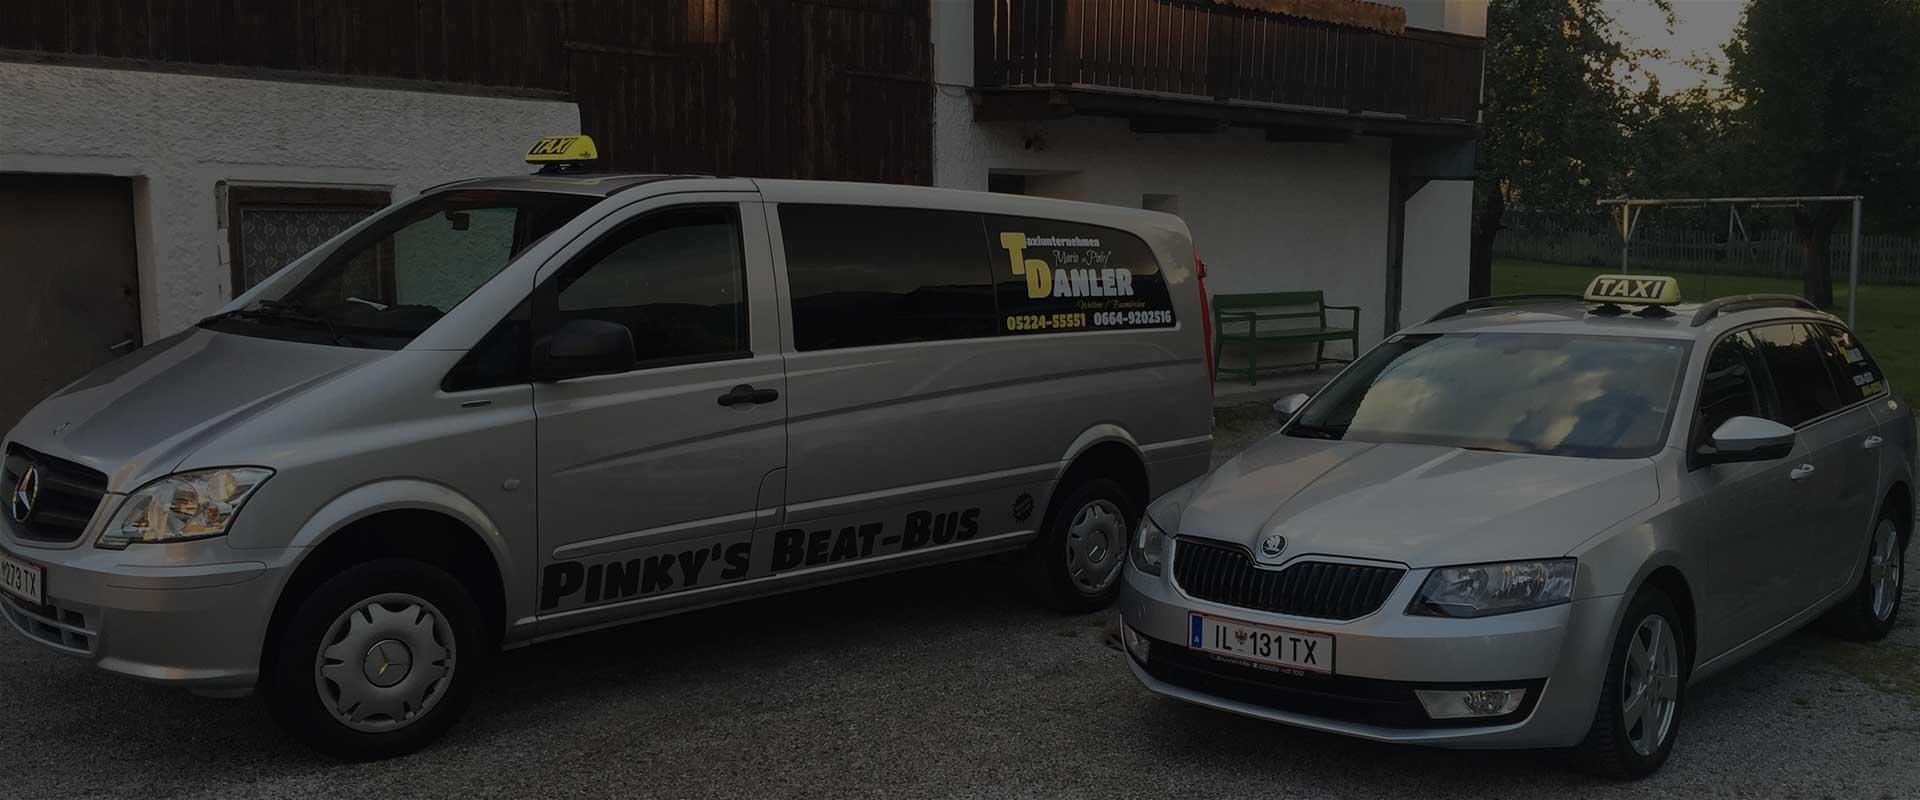 Vorschau - Foto 1 von Taxiunternehmen Danler